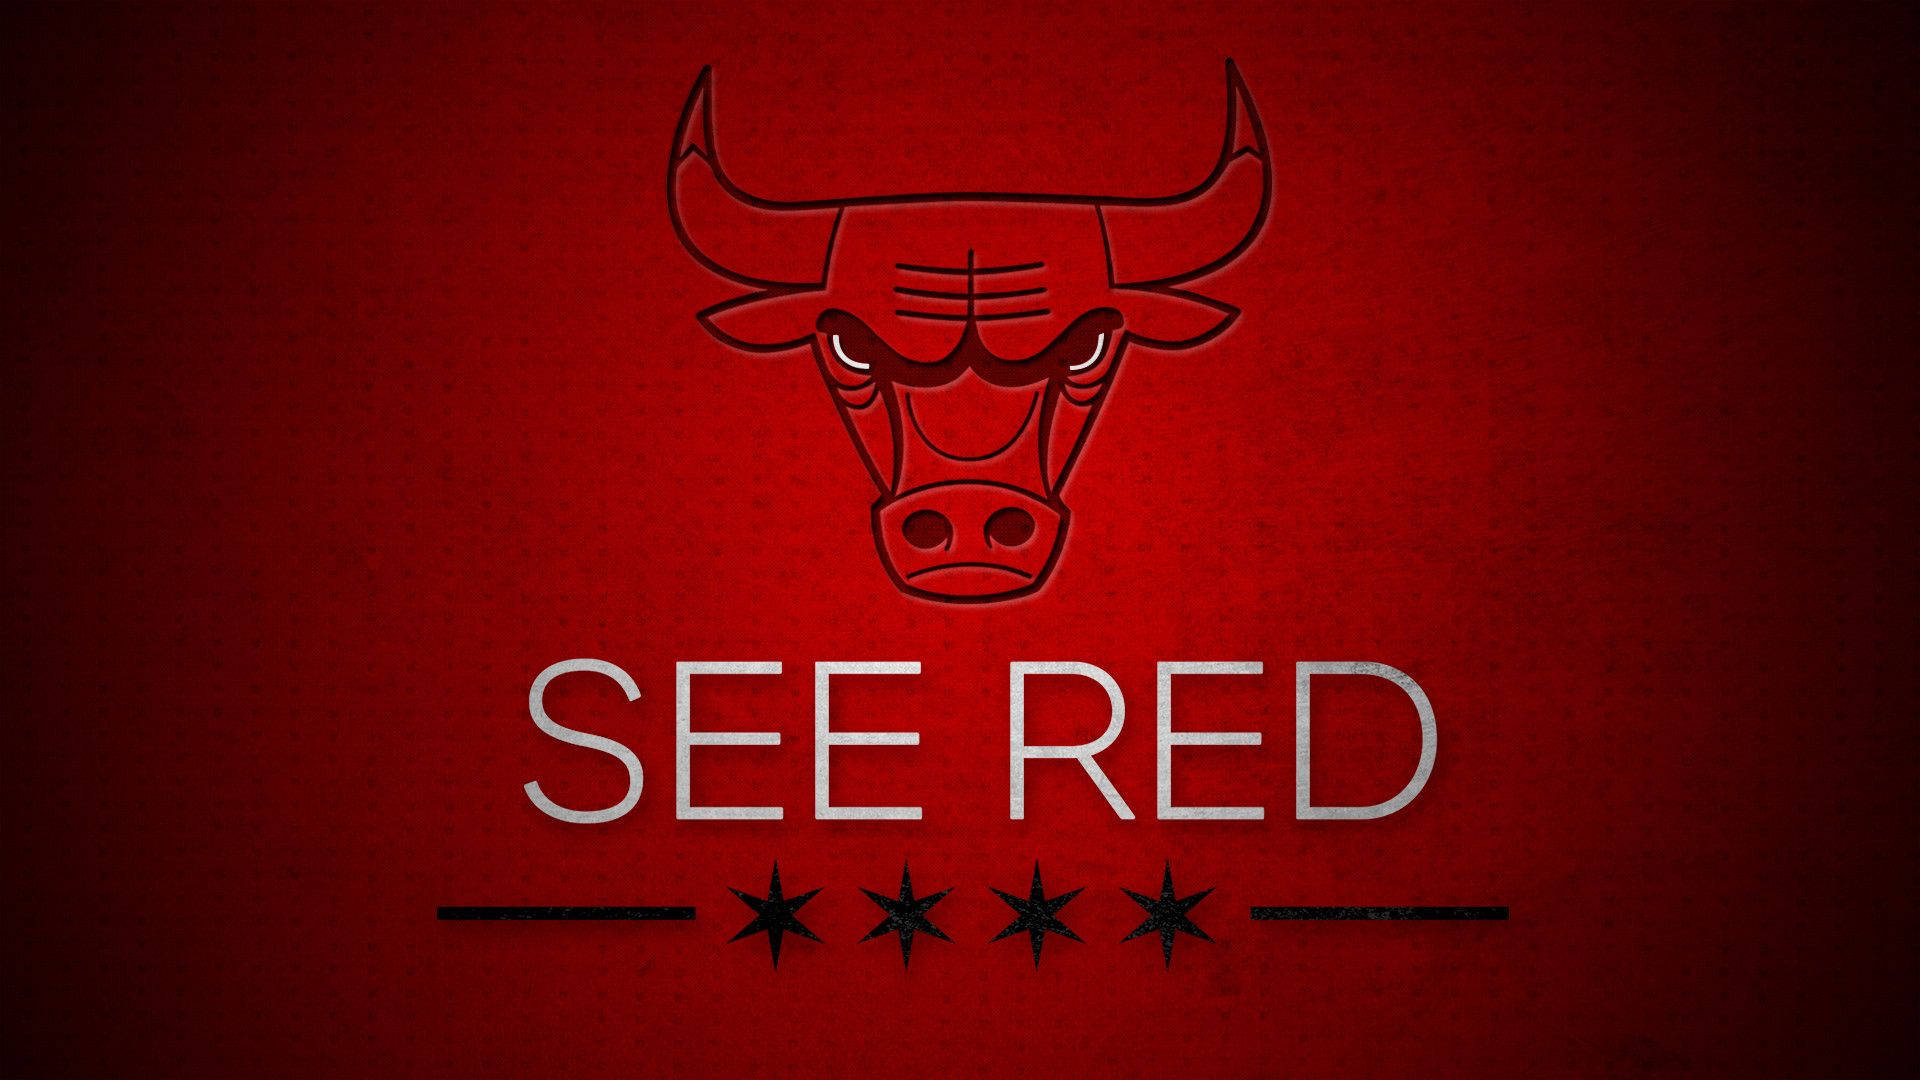 Chicago Bulls Four Black Stars Logo Wallpaper